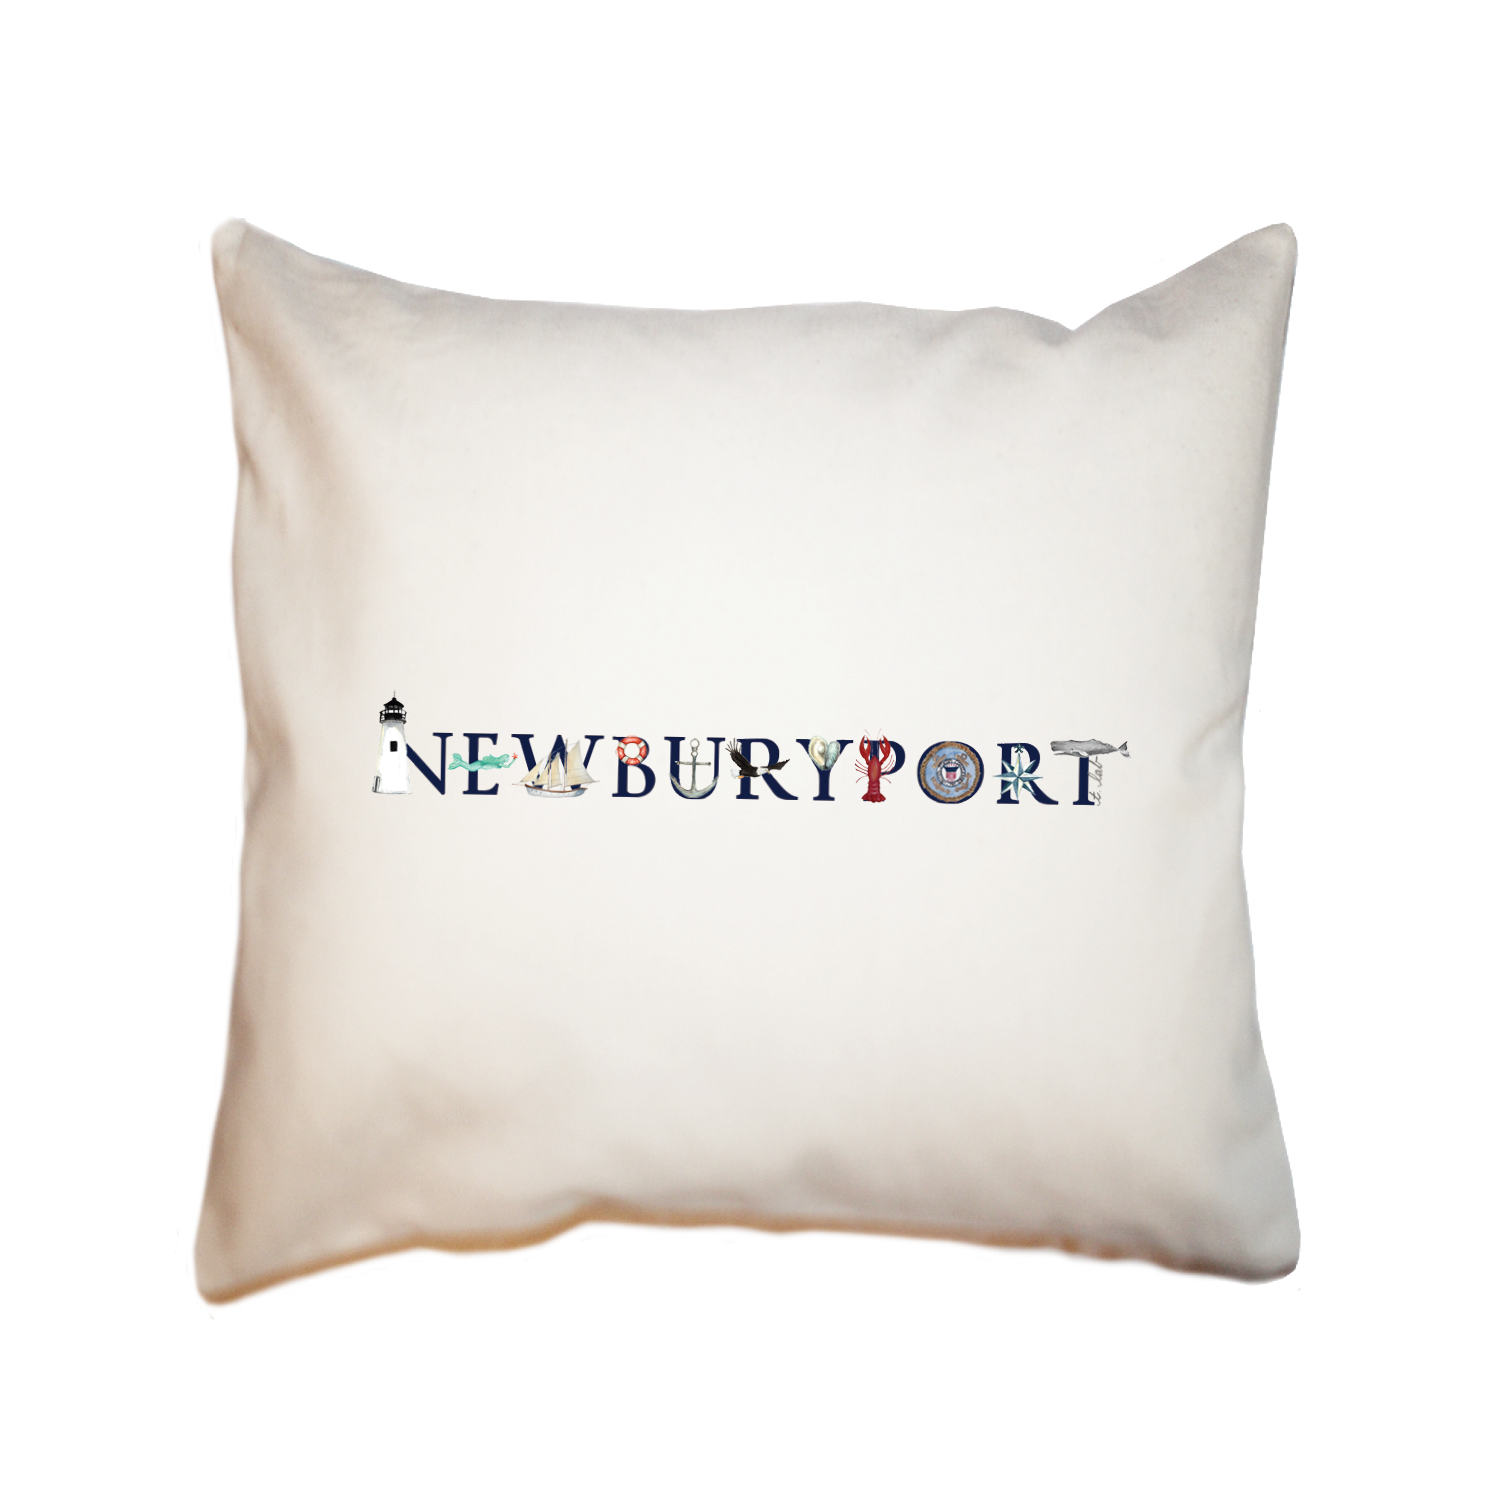 newburyport square pillow